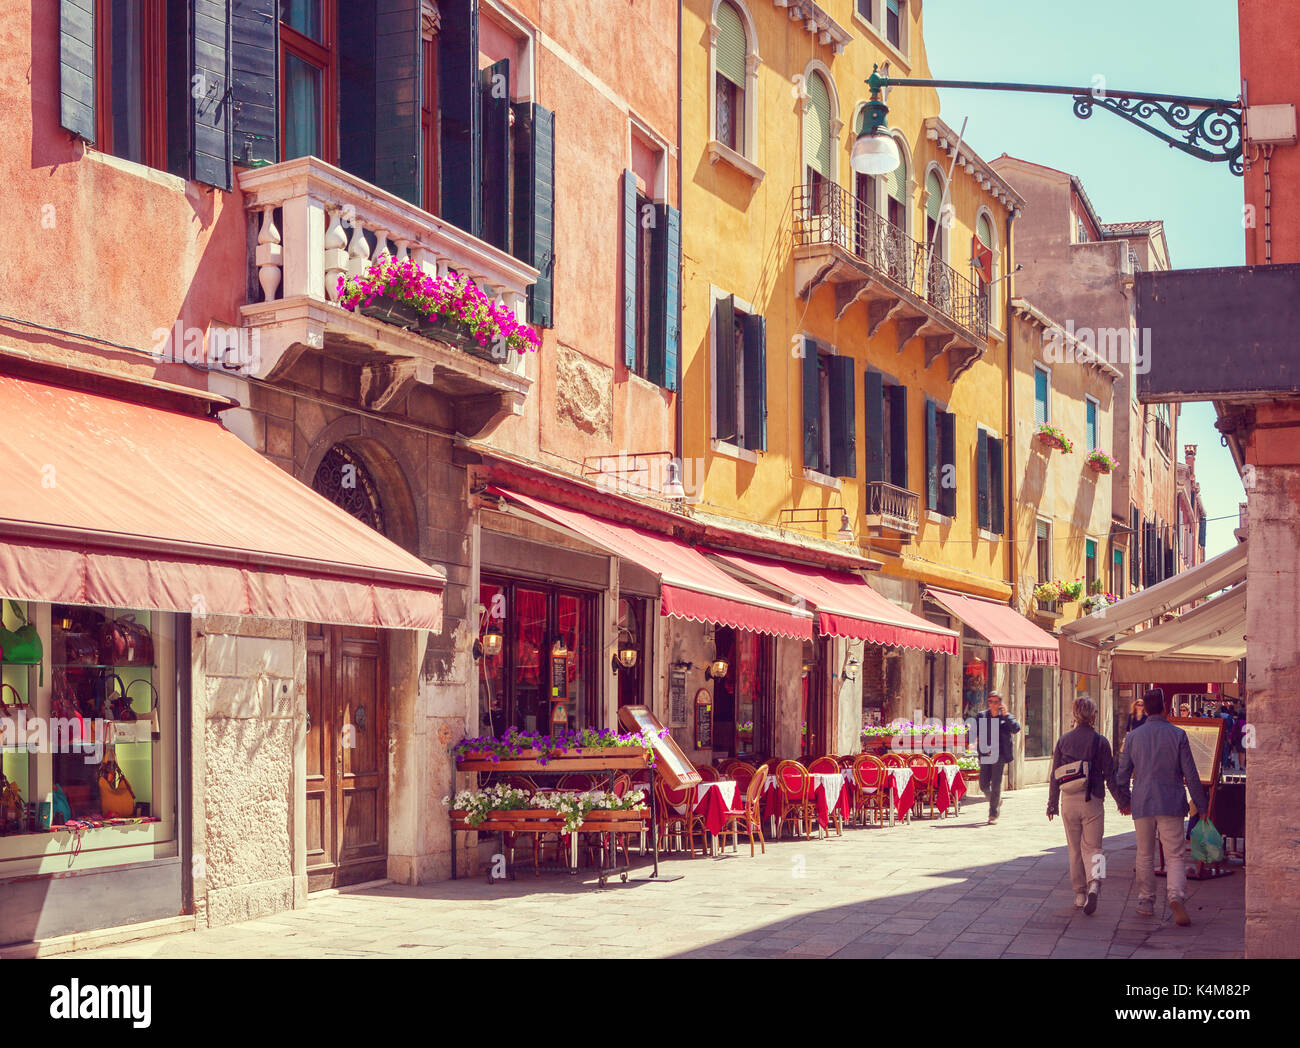 Bunte gemütliche Straße bei Tabellen mit Cafe an einem sonnigen Morgen, Venedig, Italien. Getonten Bild Stockfoto